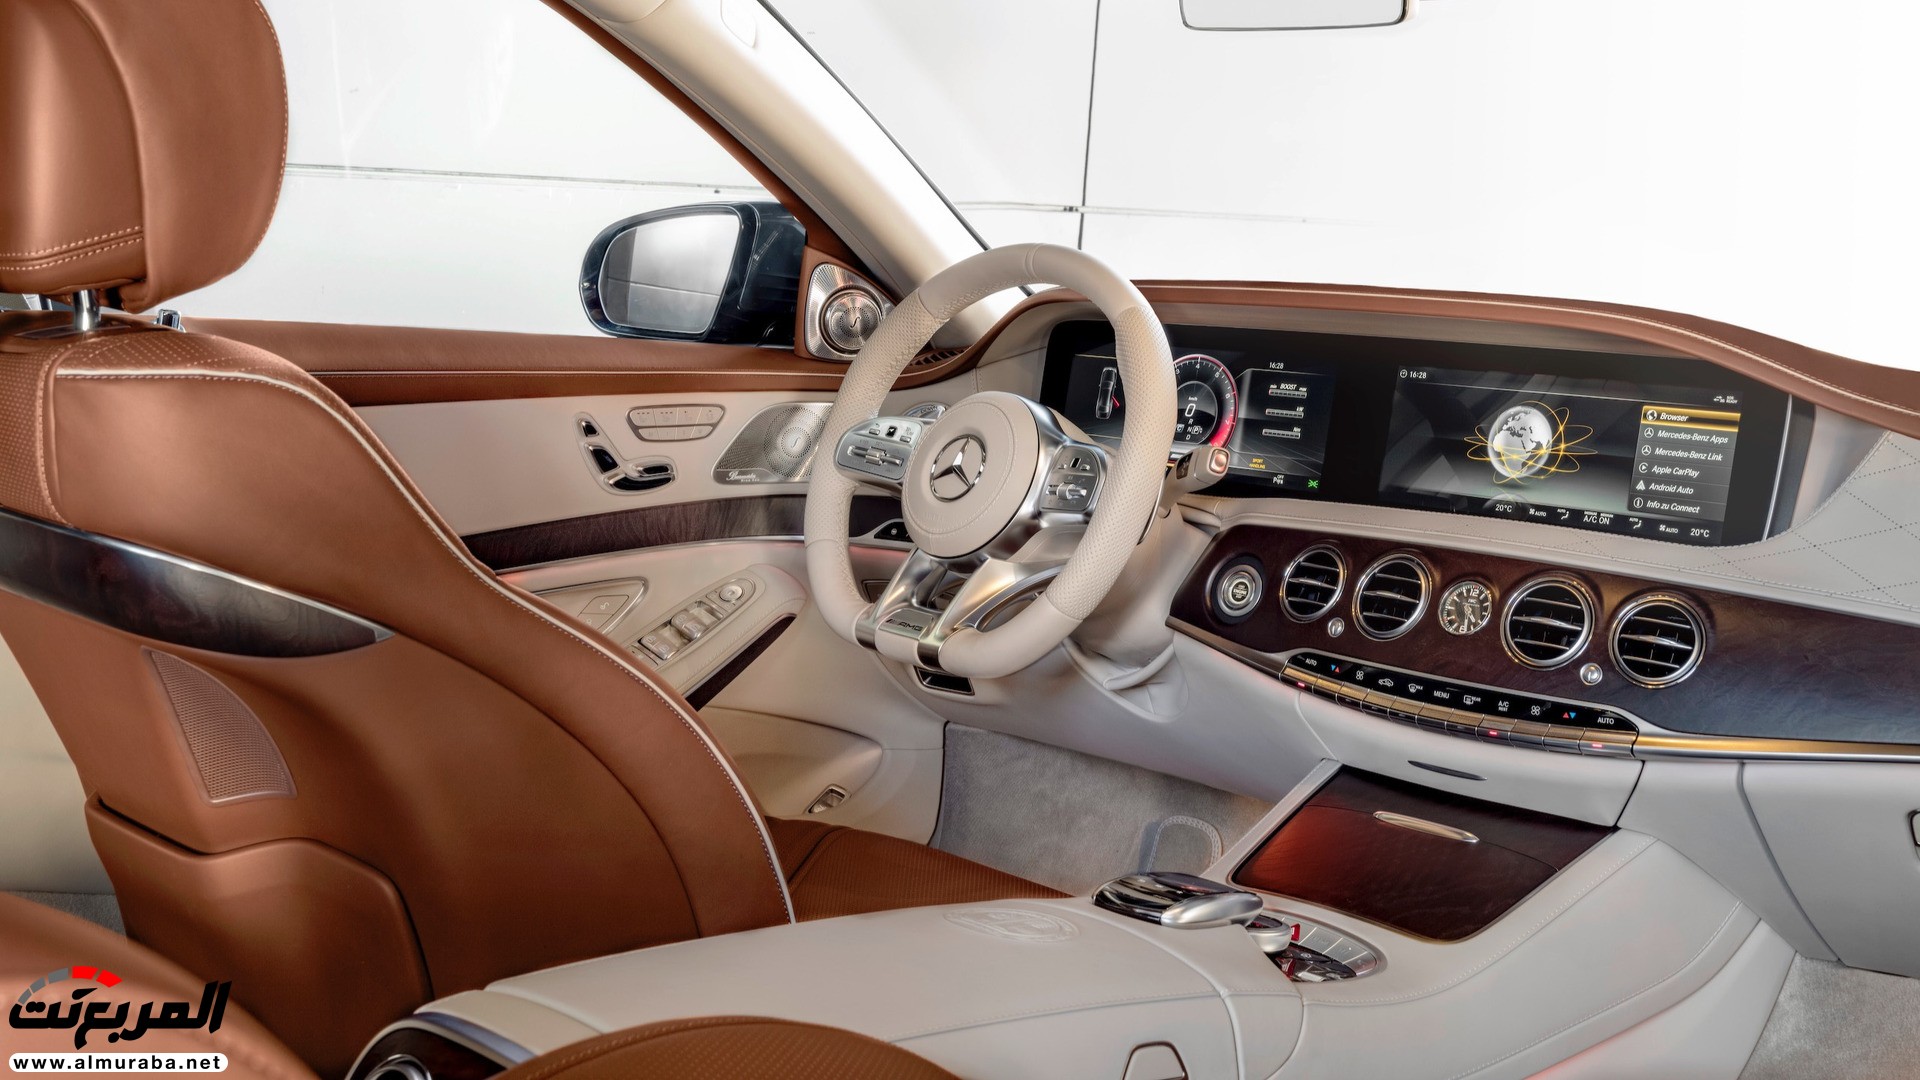 مرسيدس اس كلاس 2018 بالشكل المحدث تكشف نفسها رسمياً "تقرير وصور وفيديو" Mercedes S-Class 2